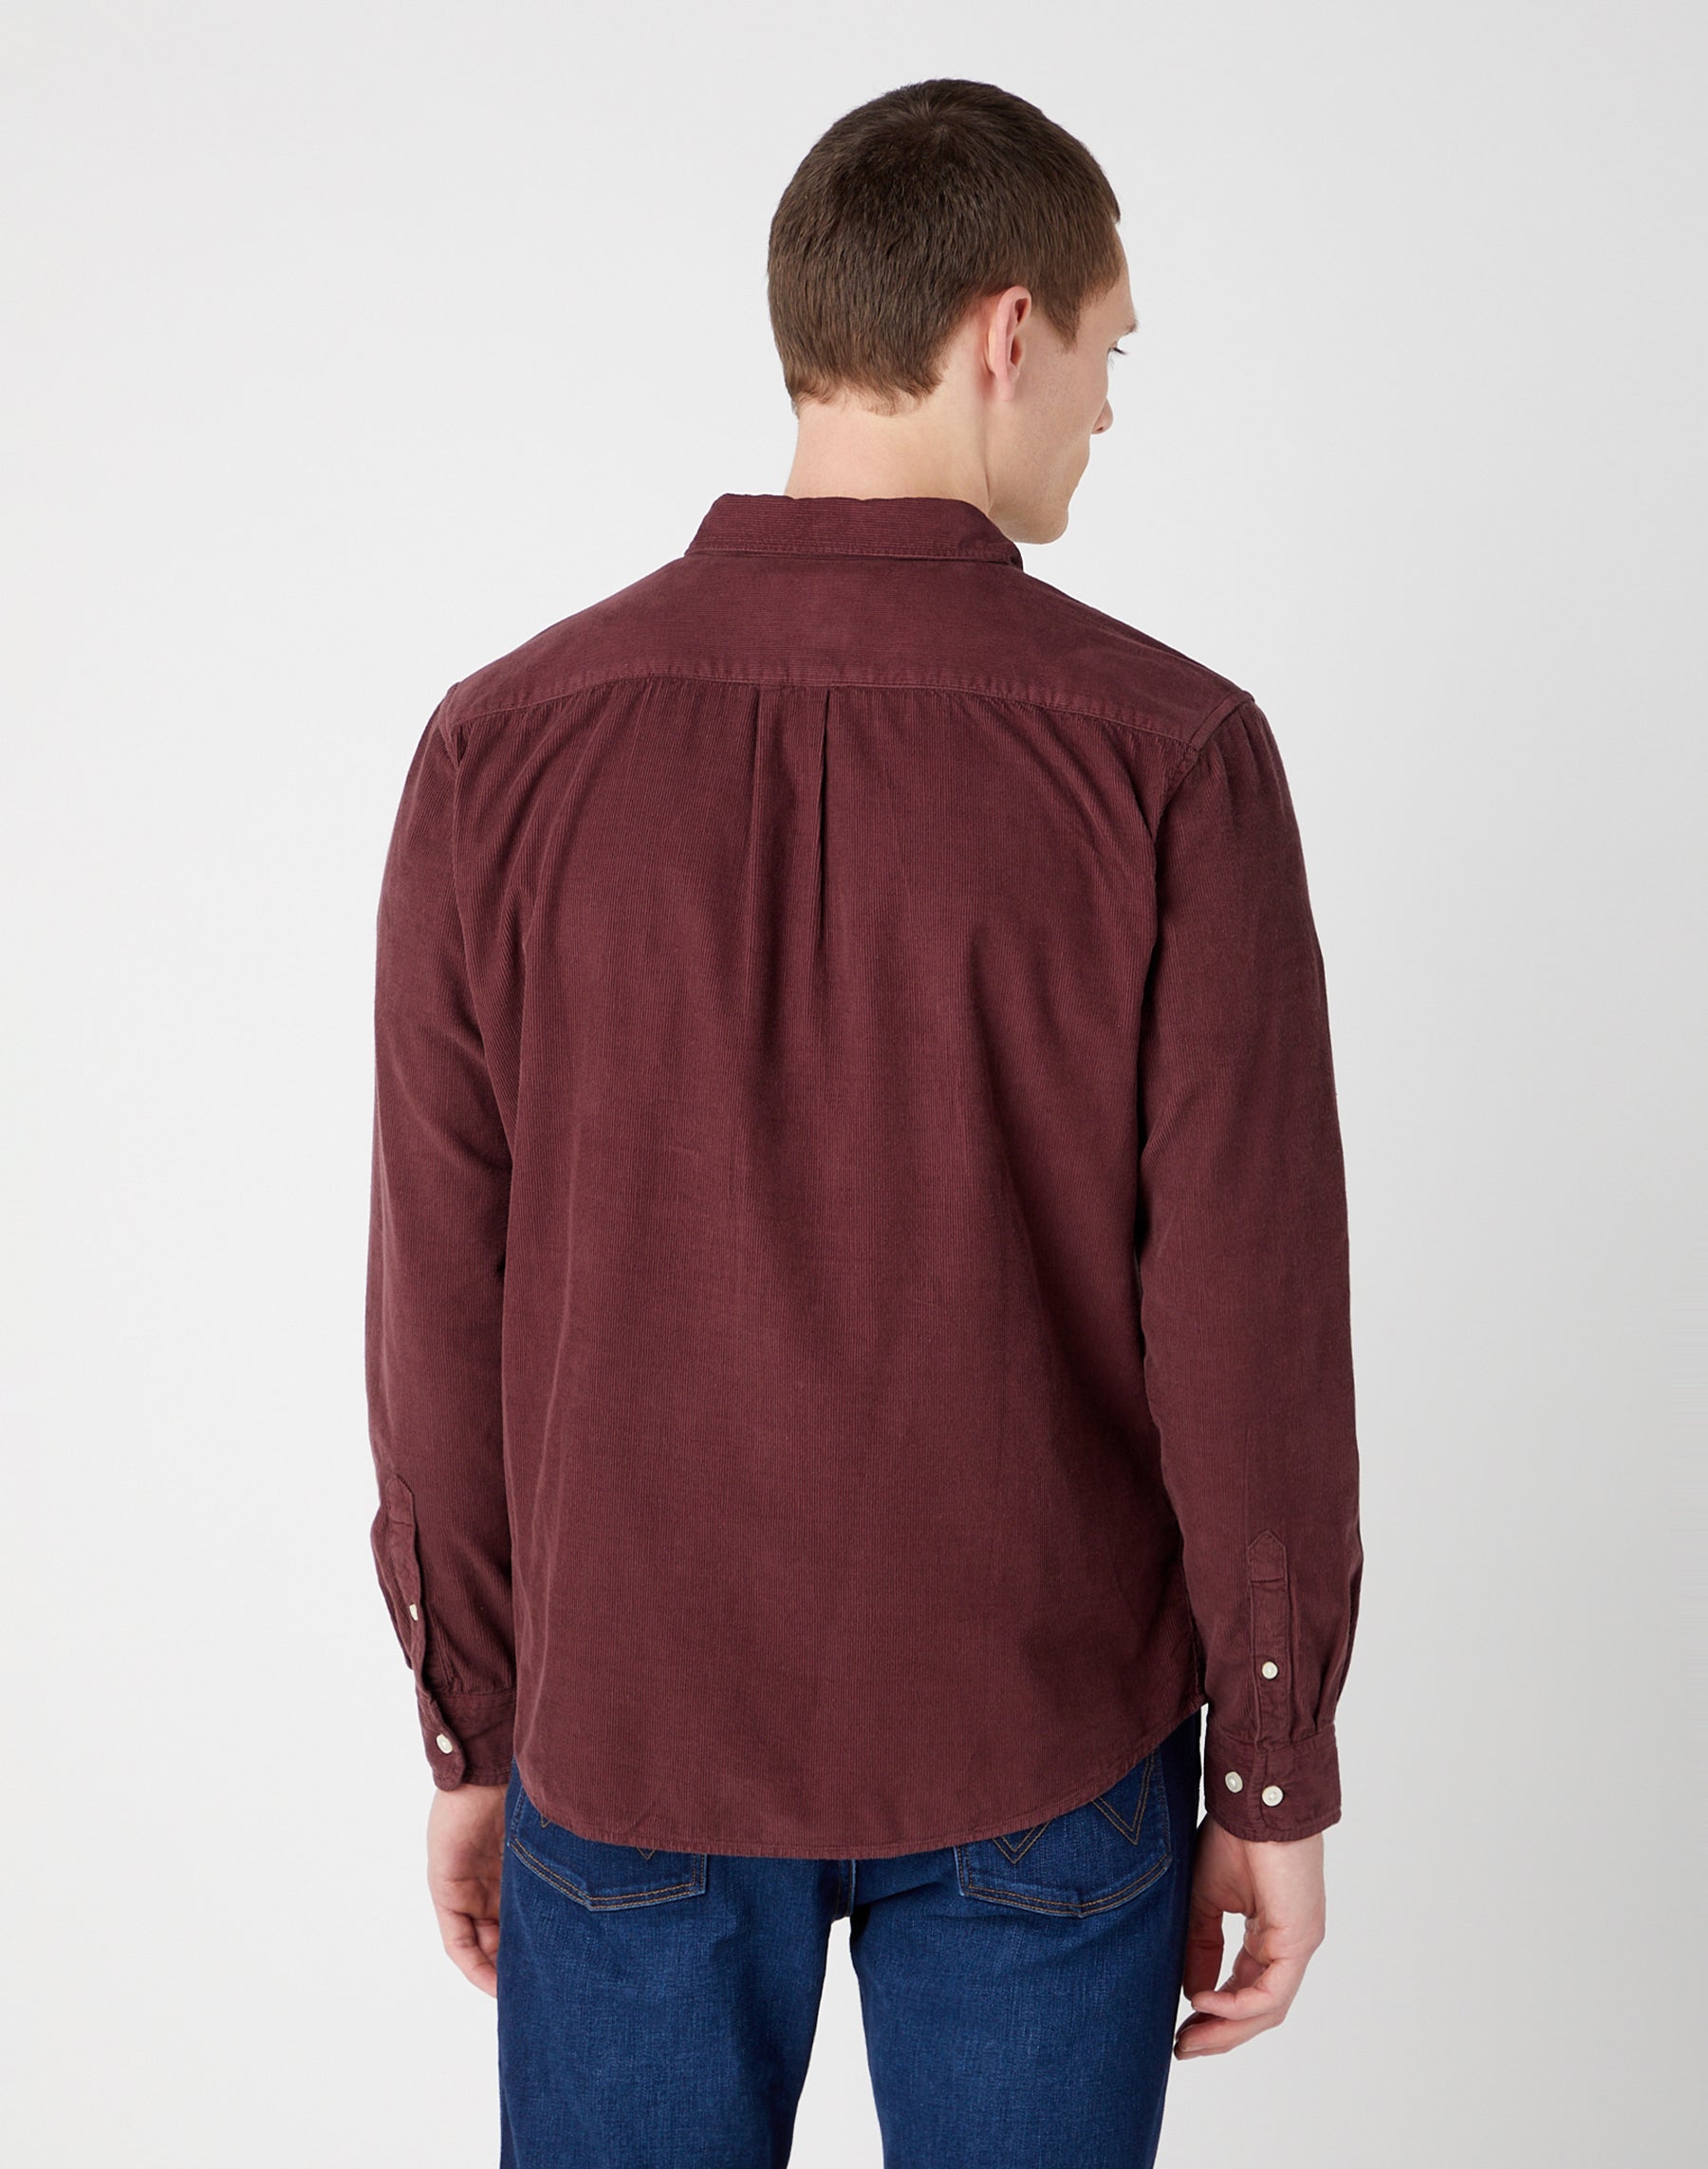 One Pocket Shirt in Dahlia Hemden Wrangler   